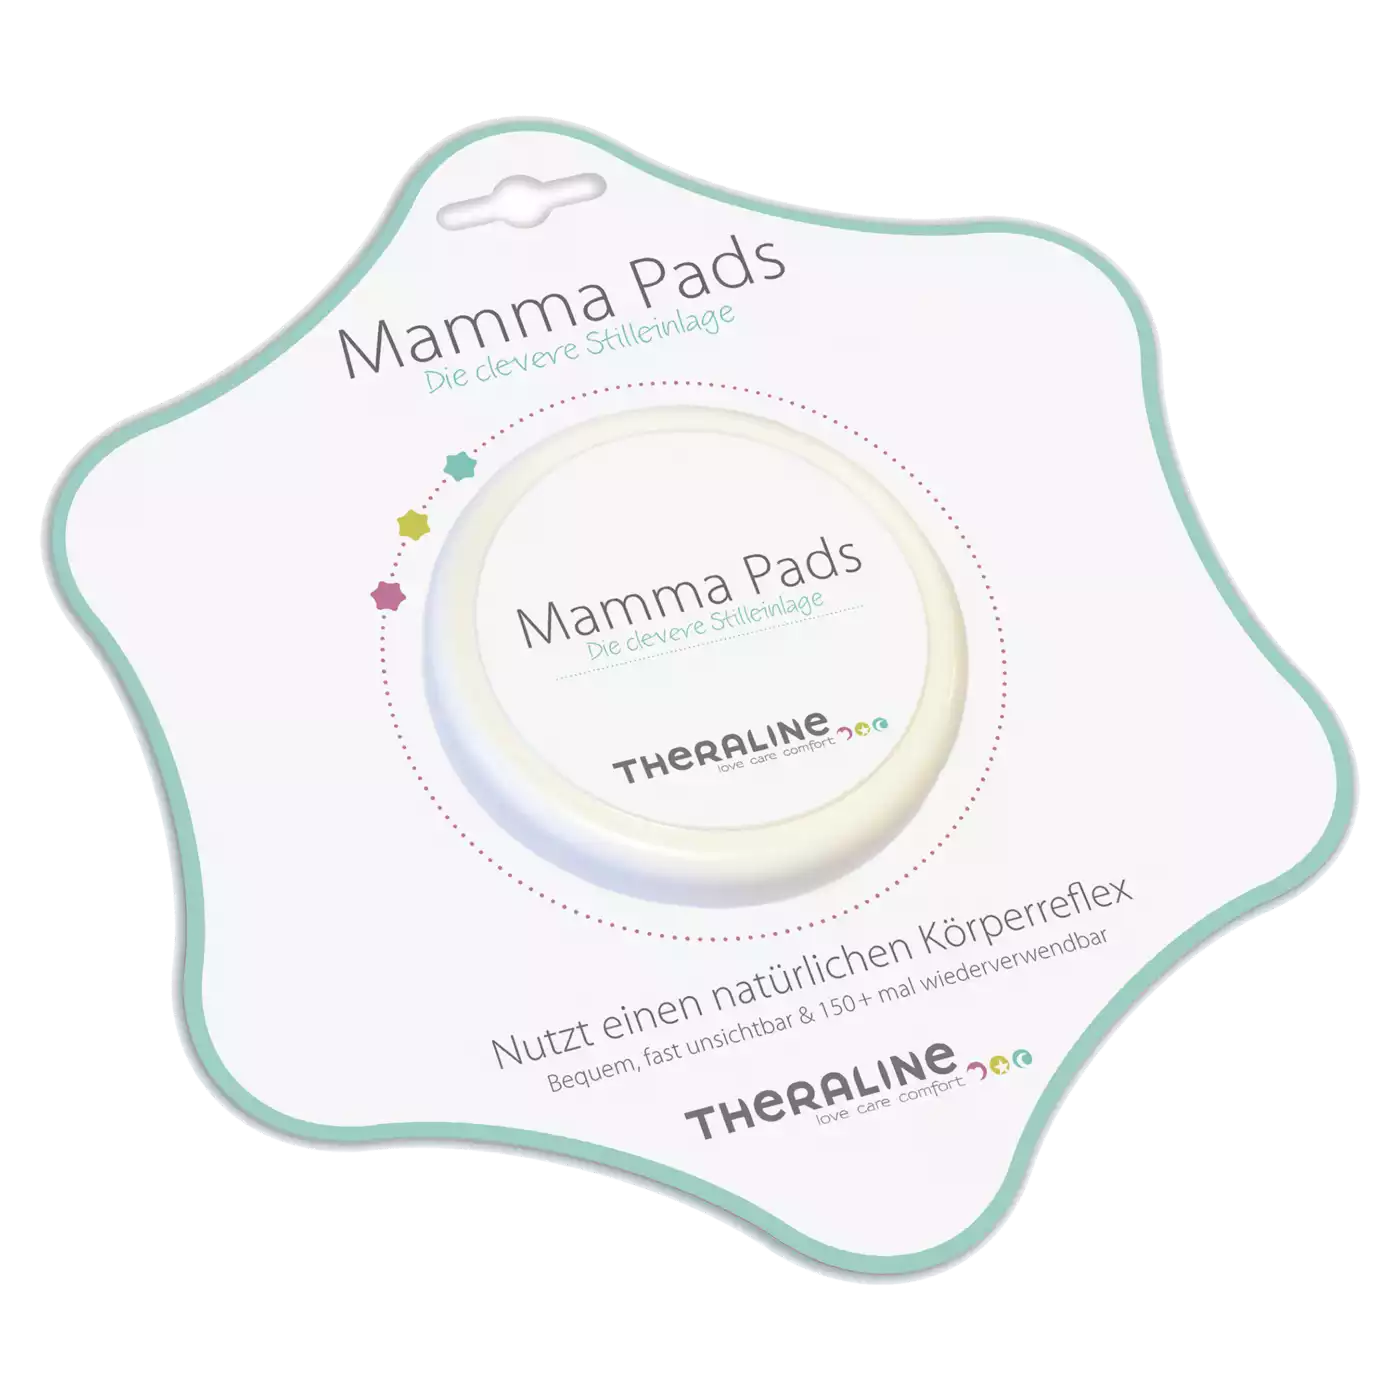 Mamma Pads - Silikonstilleinlage THERALINE Transparent Weiß 2000537335505 1